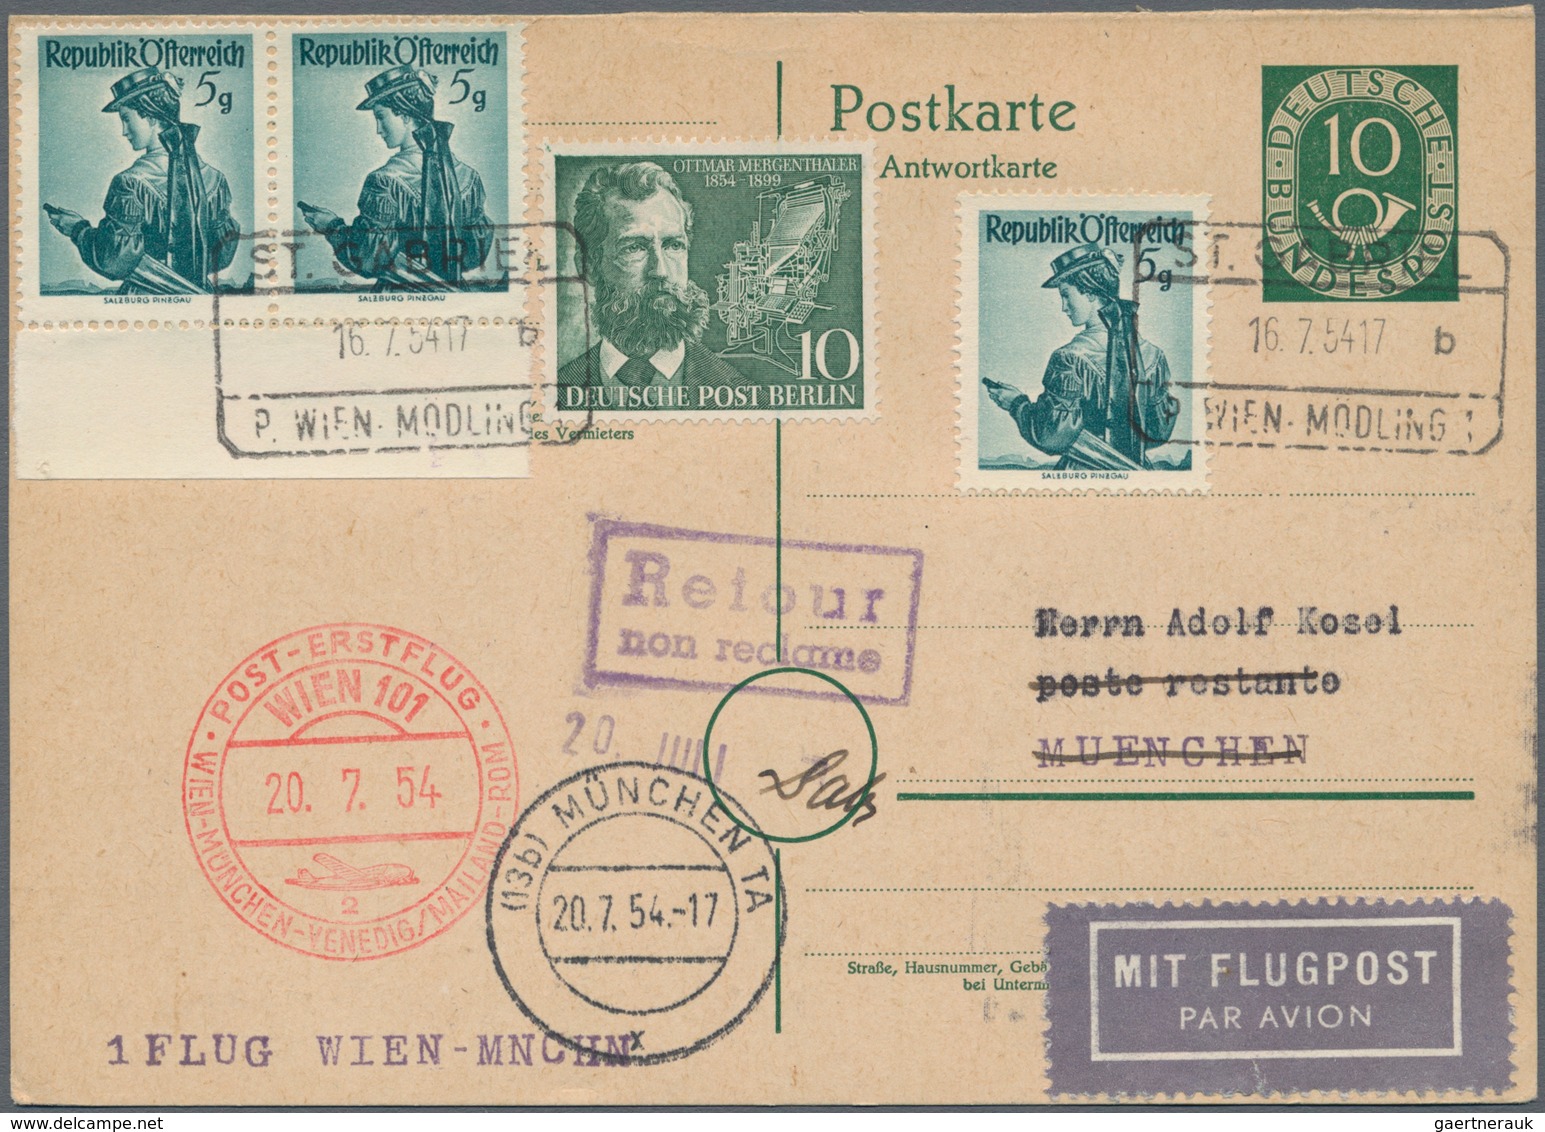 Flugpost Europa: 1950/1958, vielseitige Partie von ca. 93 Flugpost-Briefen und -Karten mit nur besse